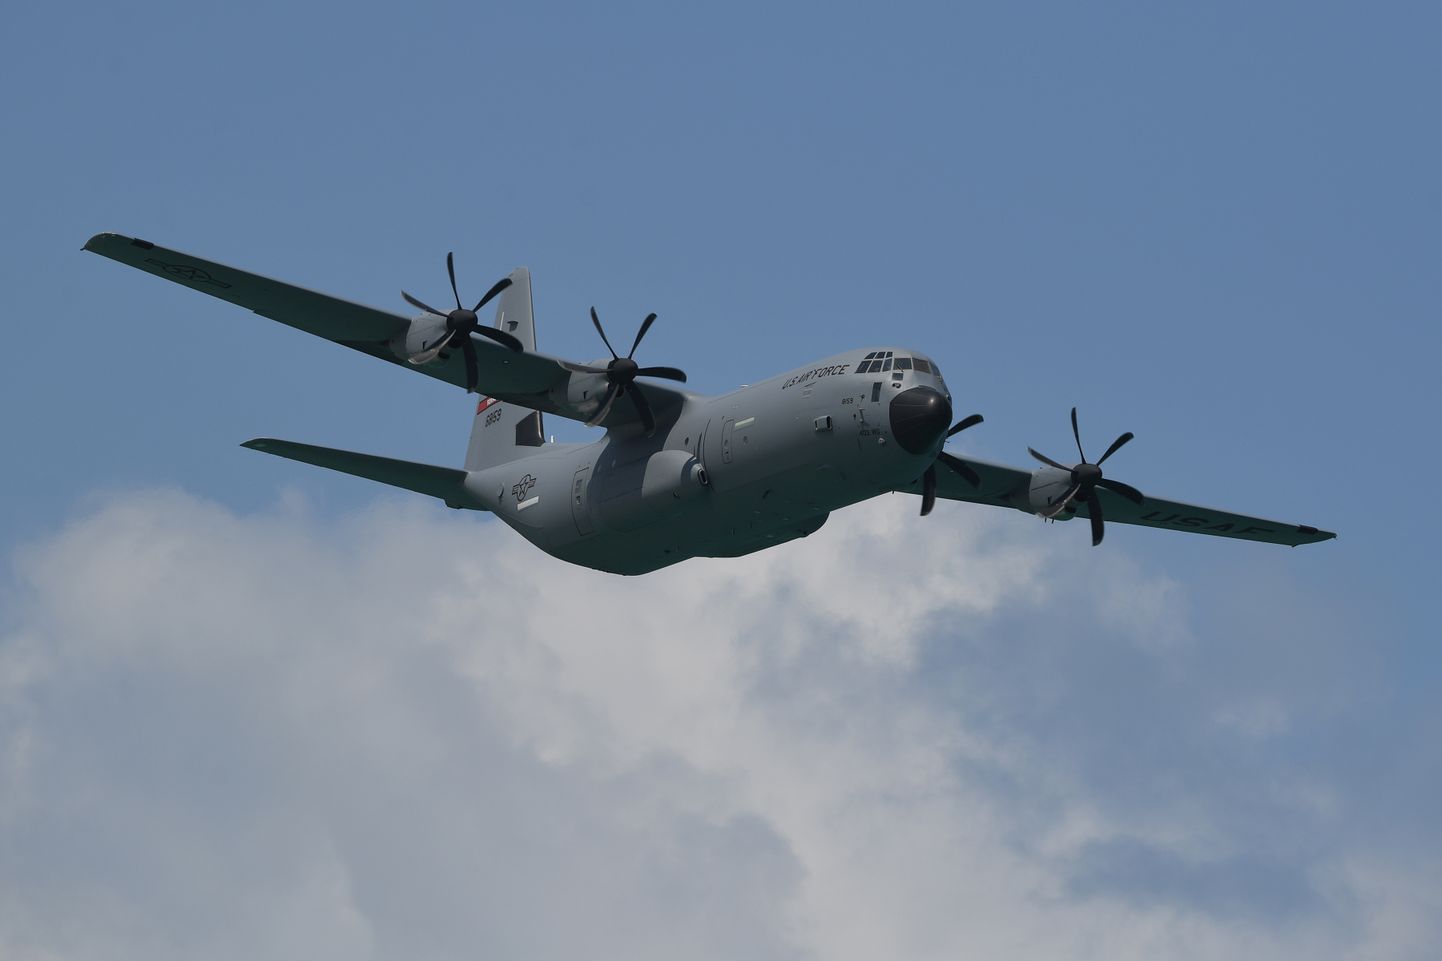 Lennuk C-130 Hercules. Foto on illustratiivne.